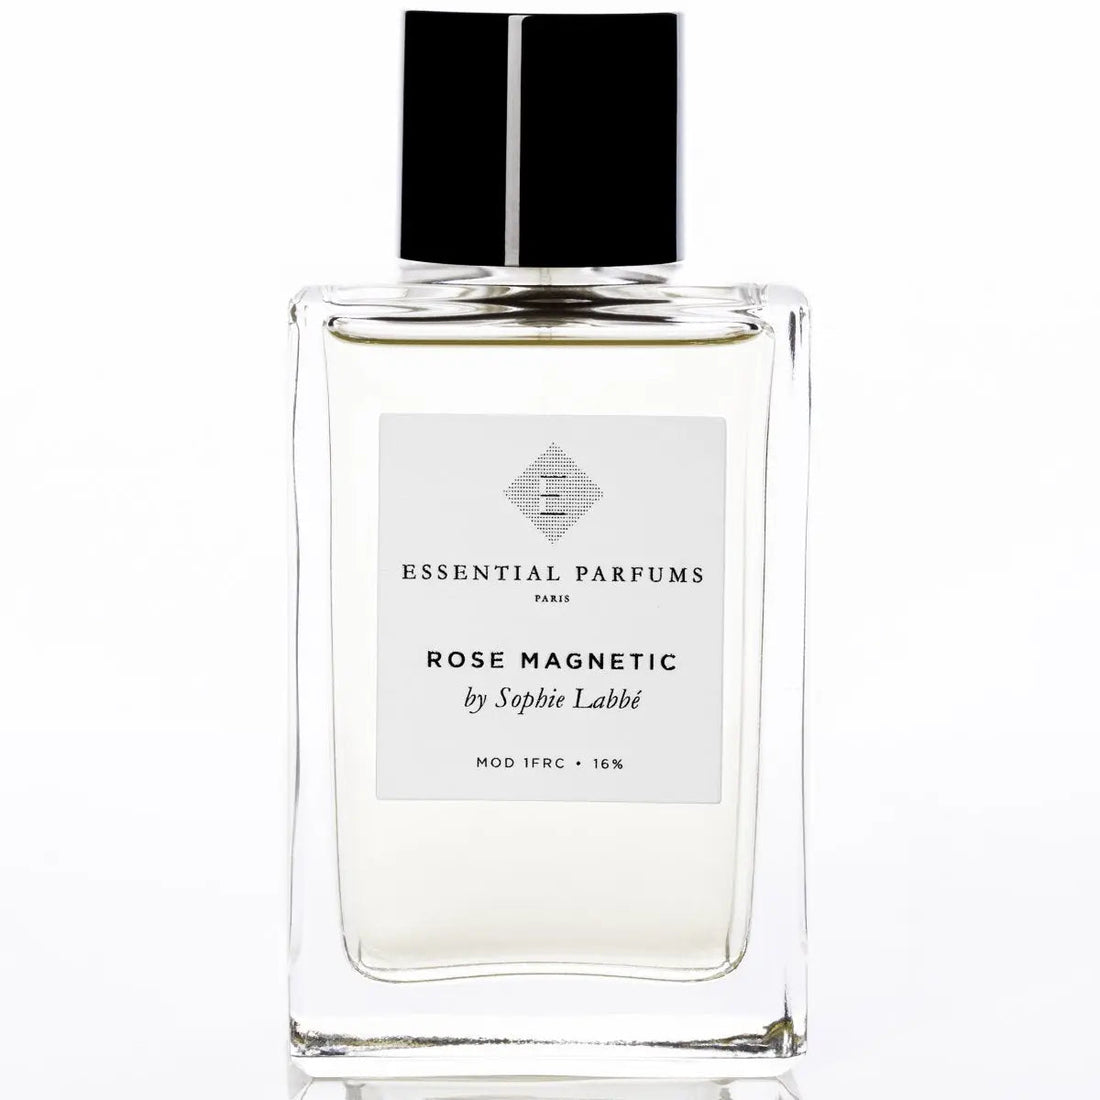 Essential parfums Rose Magnetic eau de parfum - 100 ml